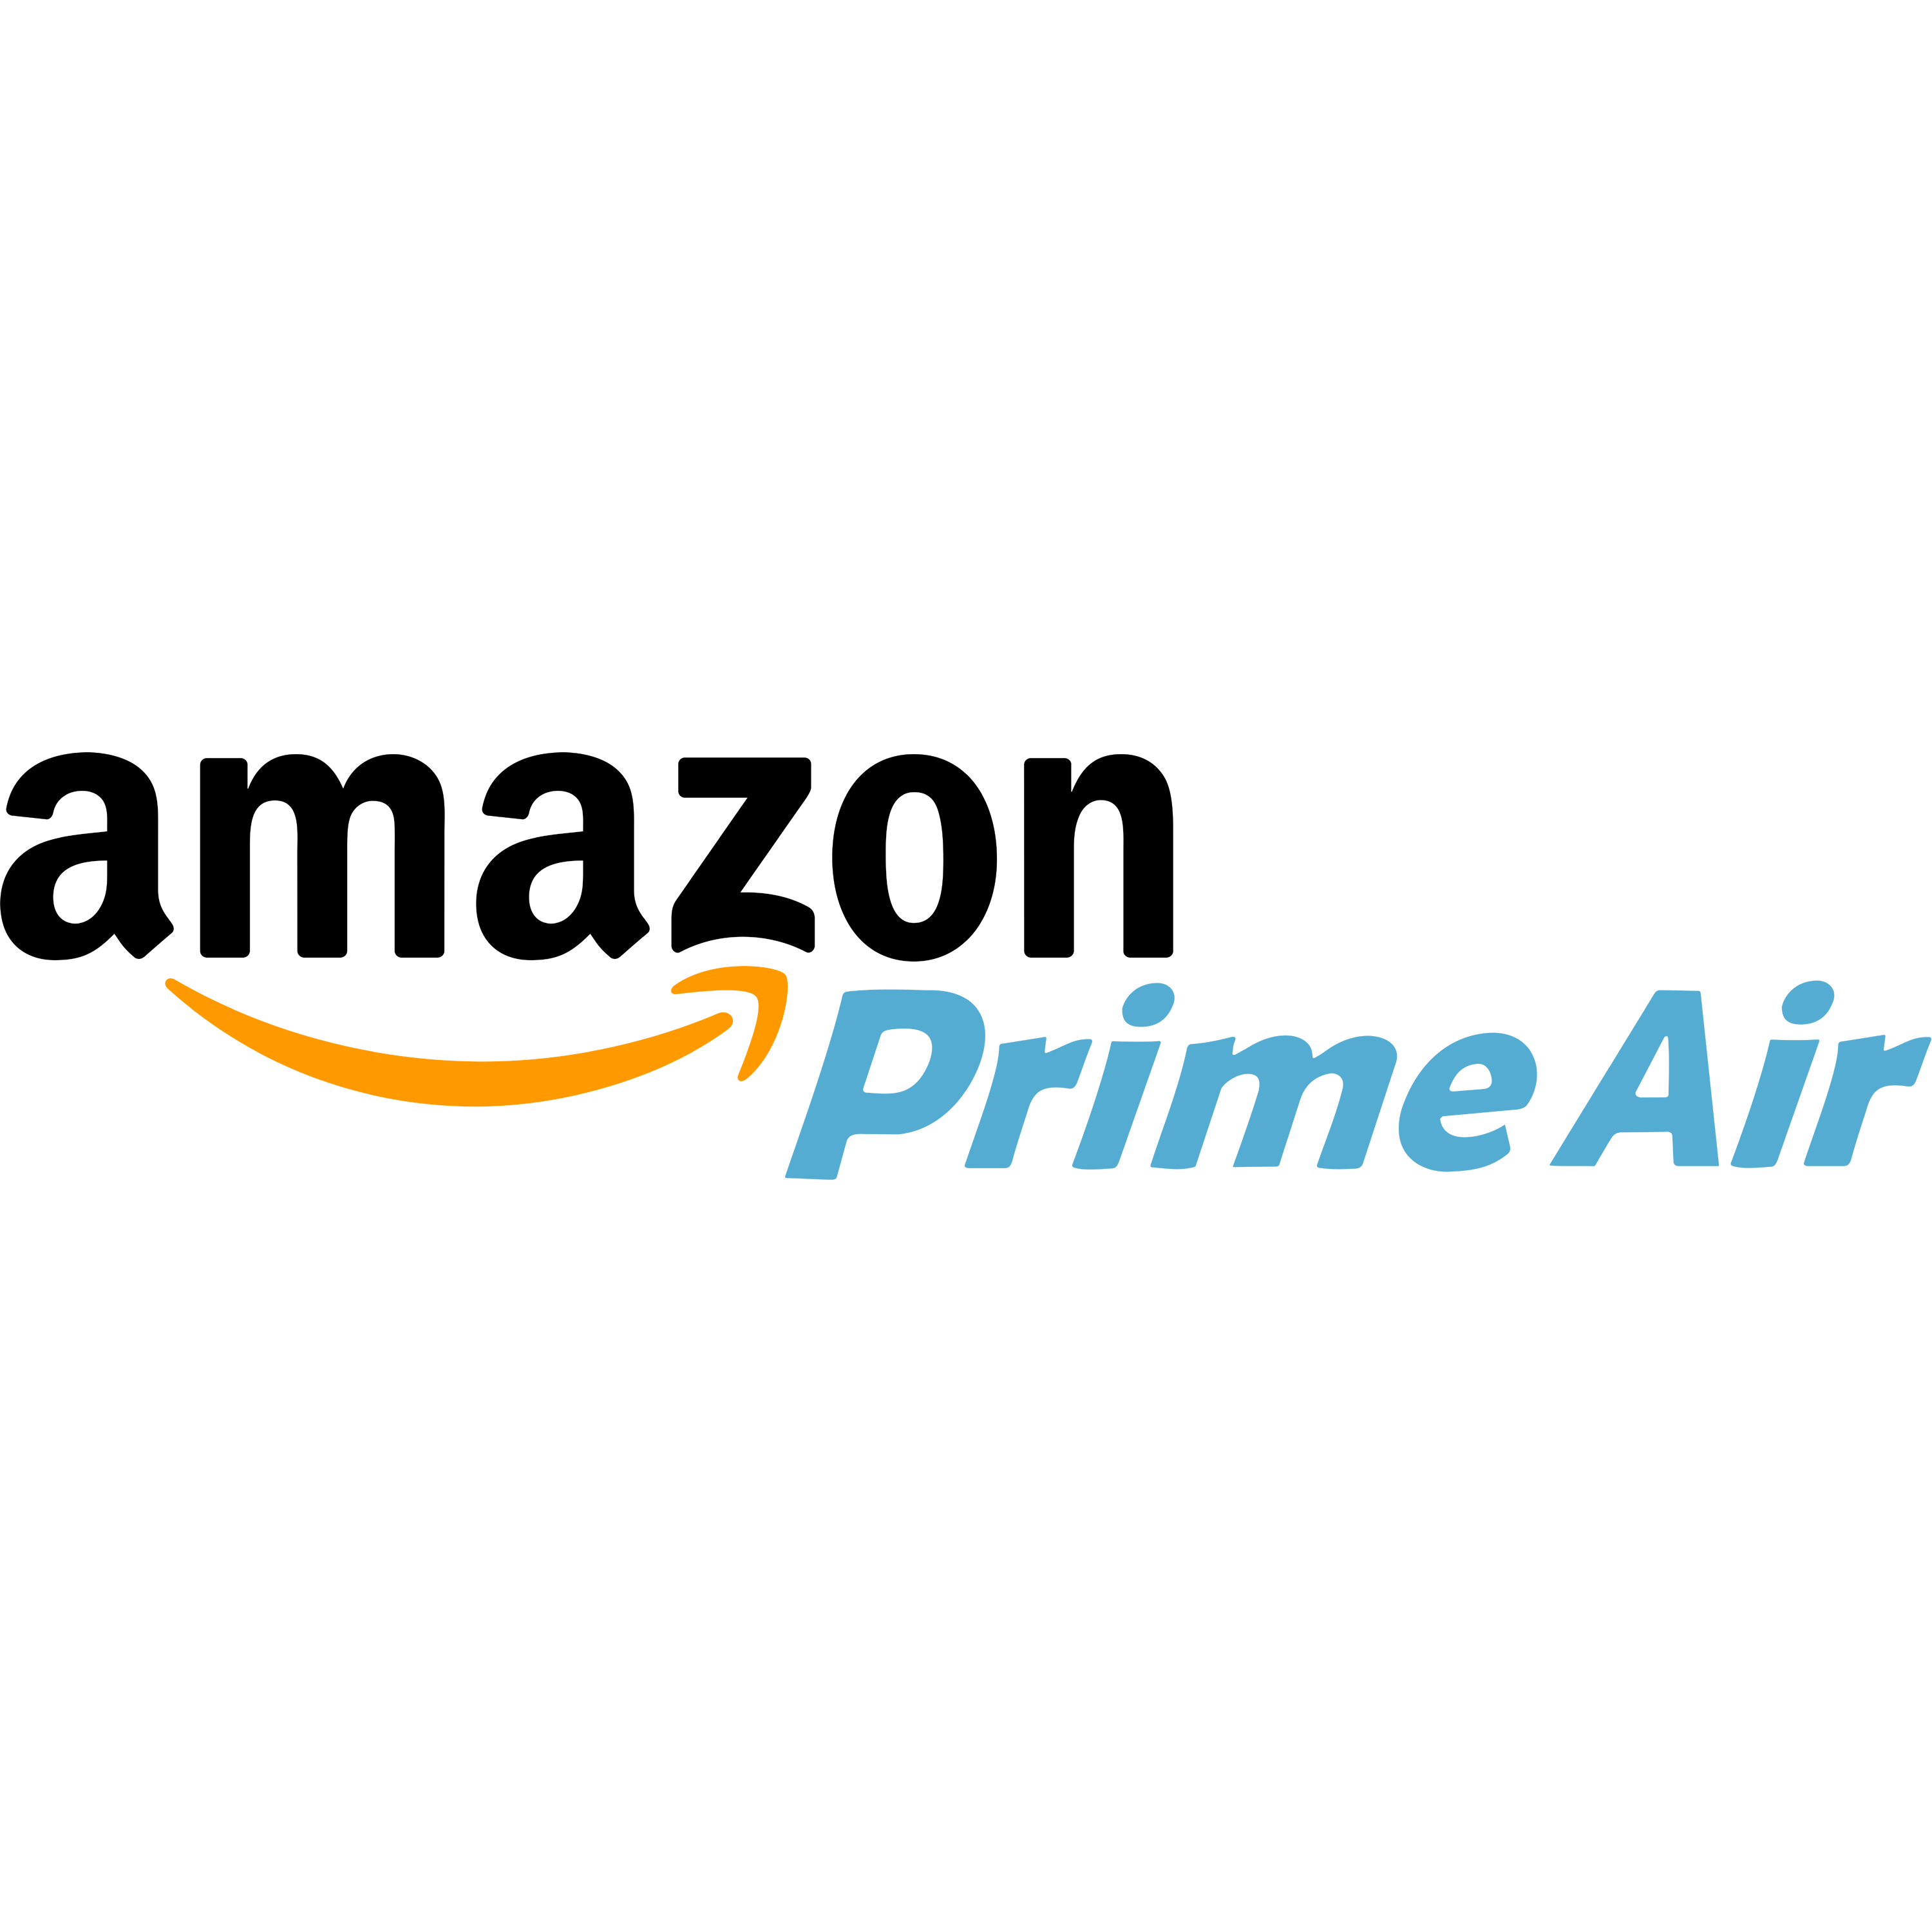 AmAmazon Prime Air Logo Transparent Image